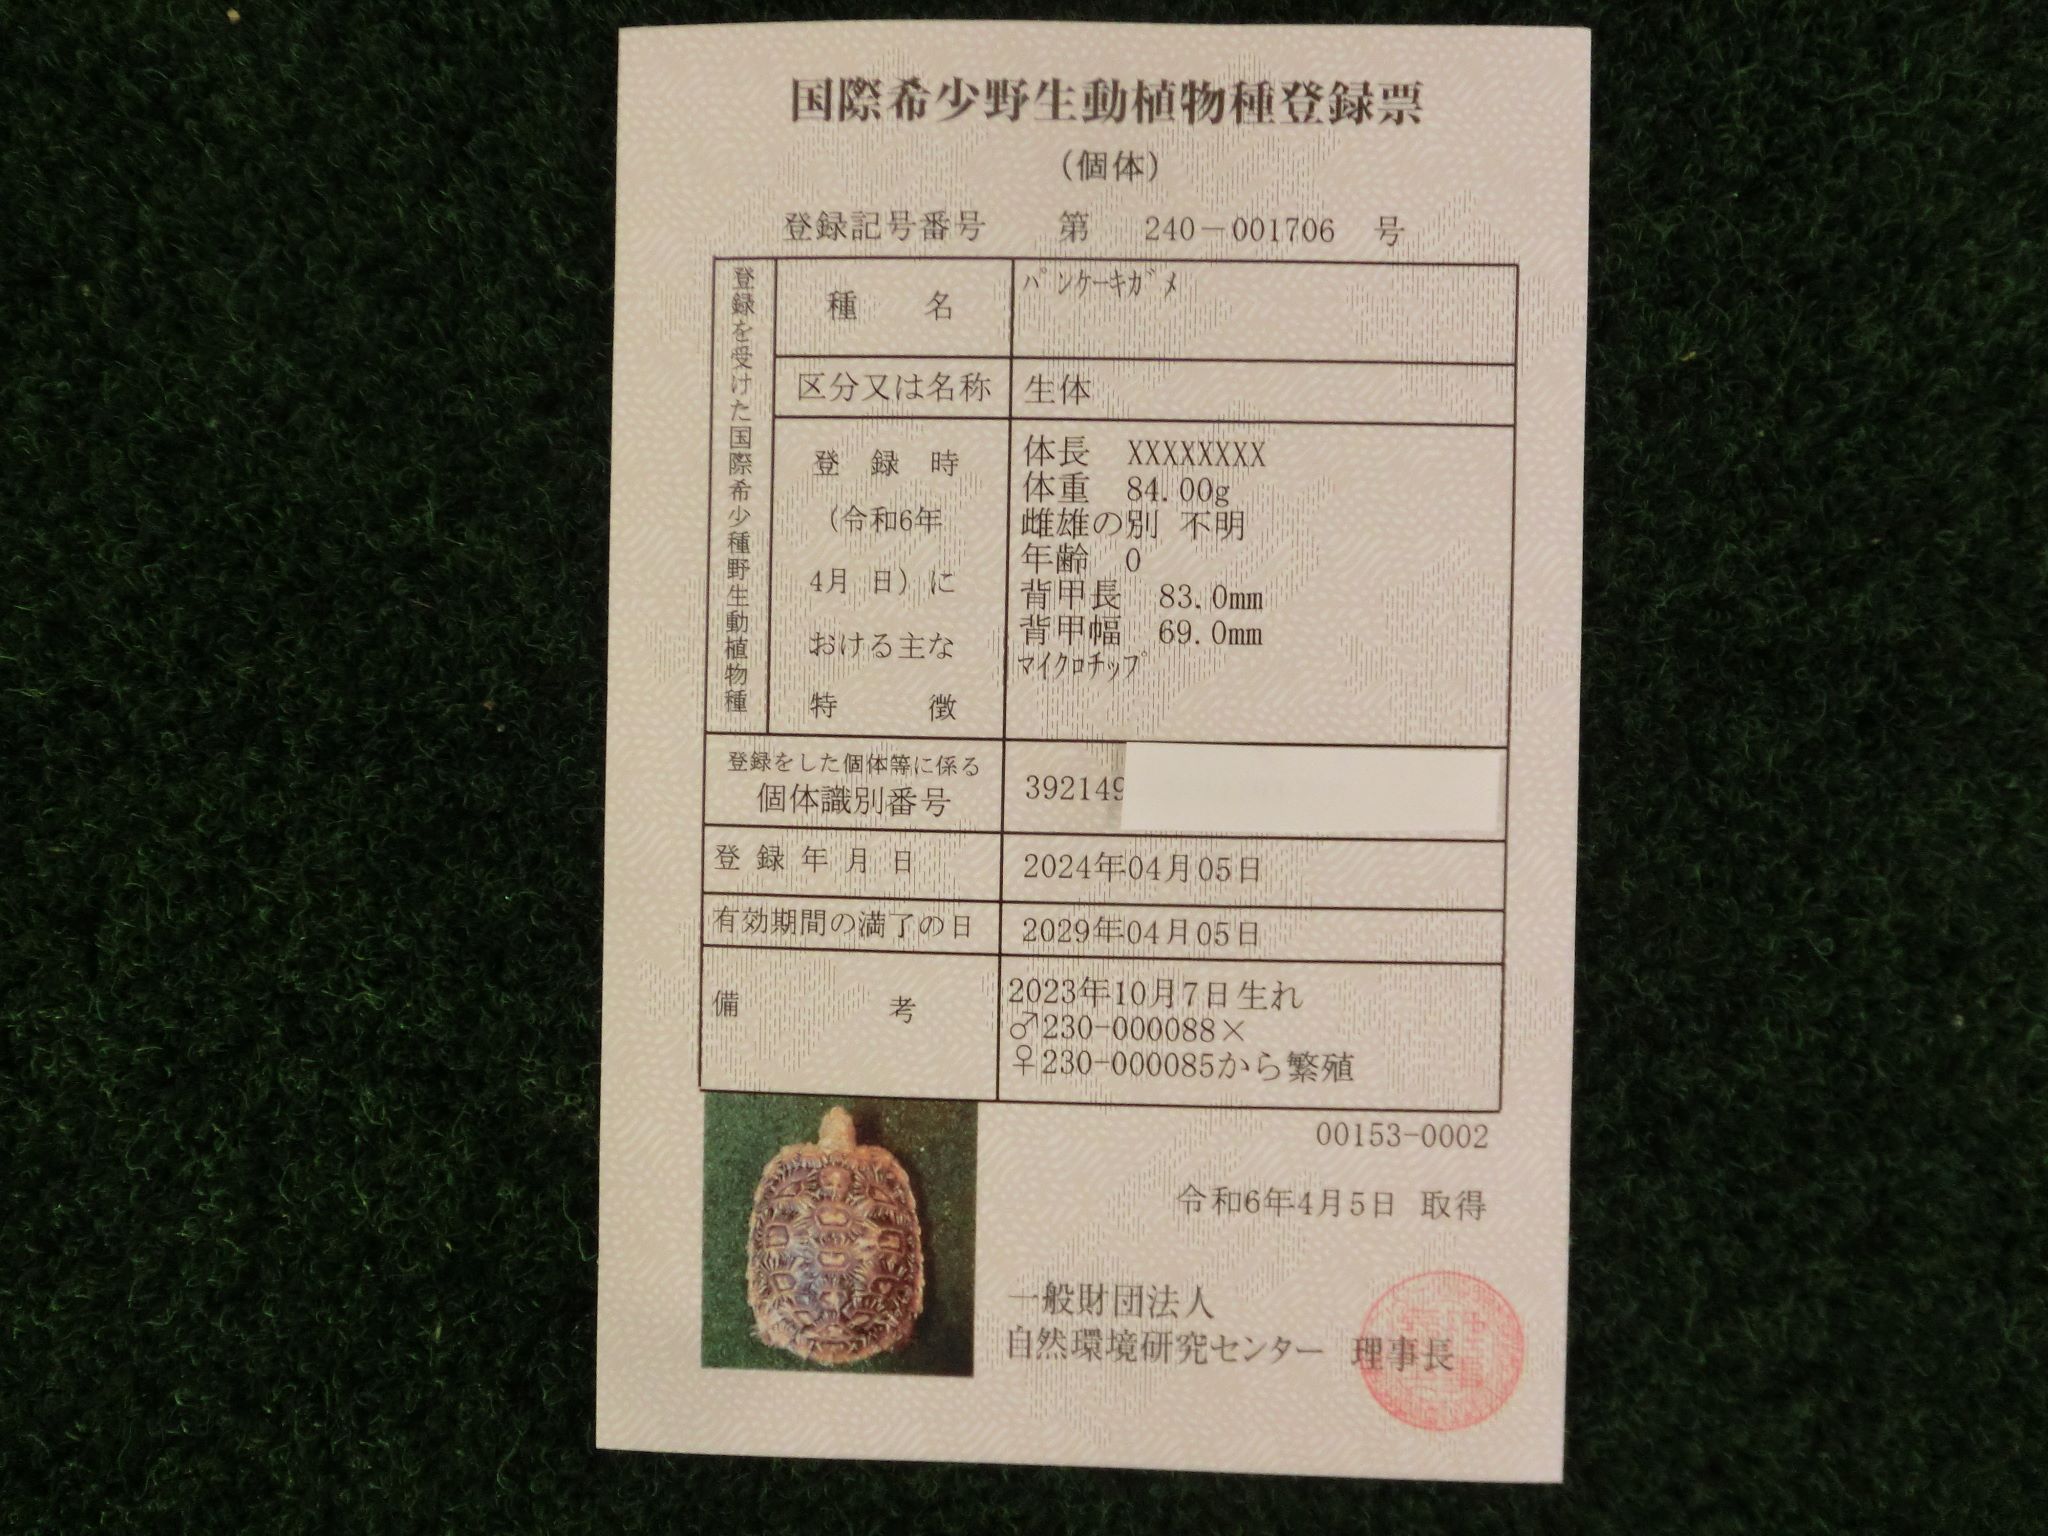 パンケーキリクガメ SMサイズ　08号 当店繁殖 登録票付き個体画像